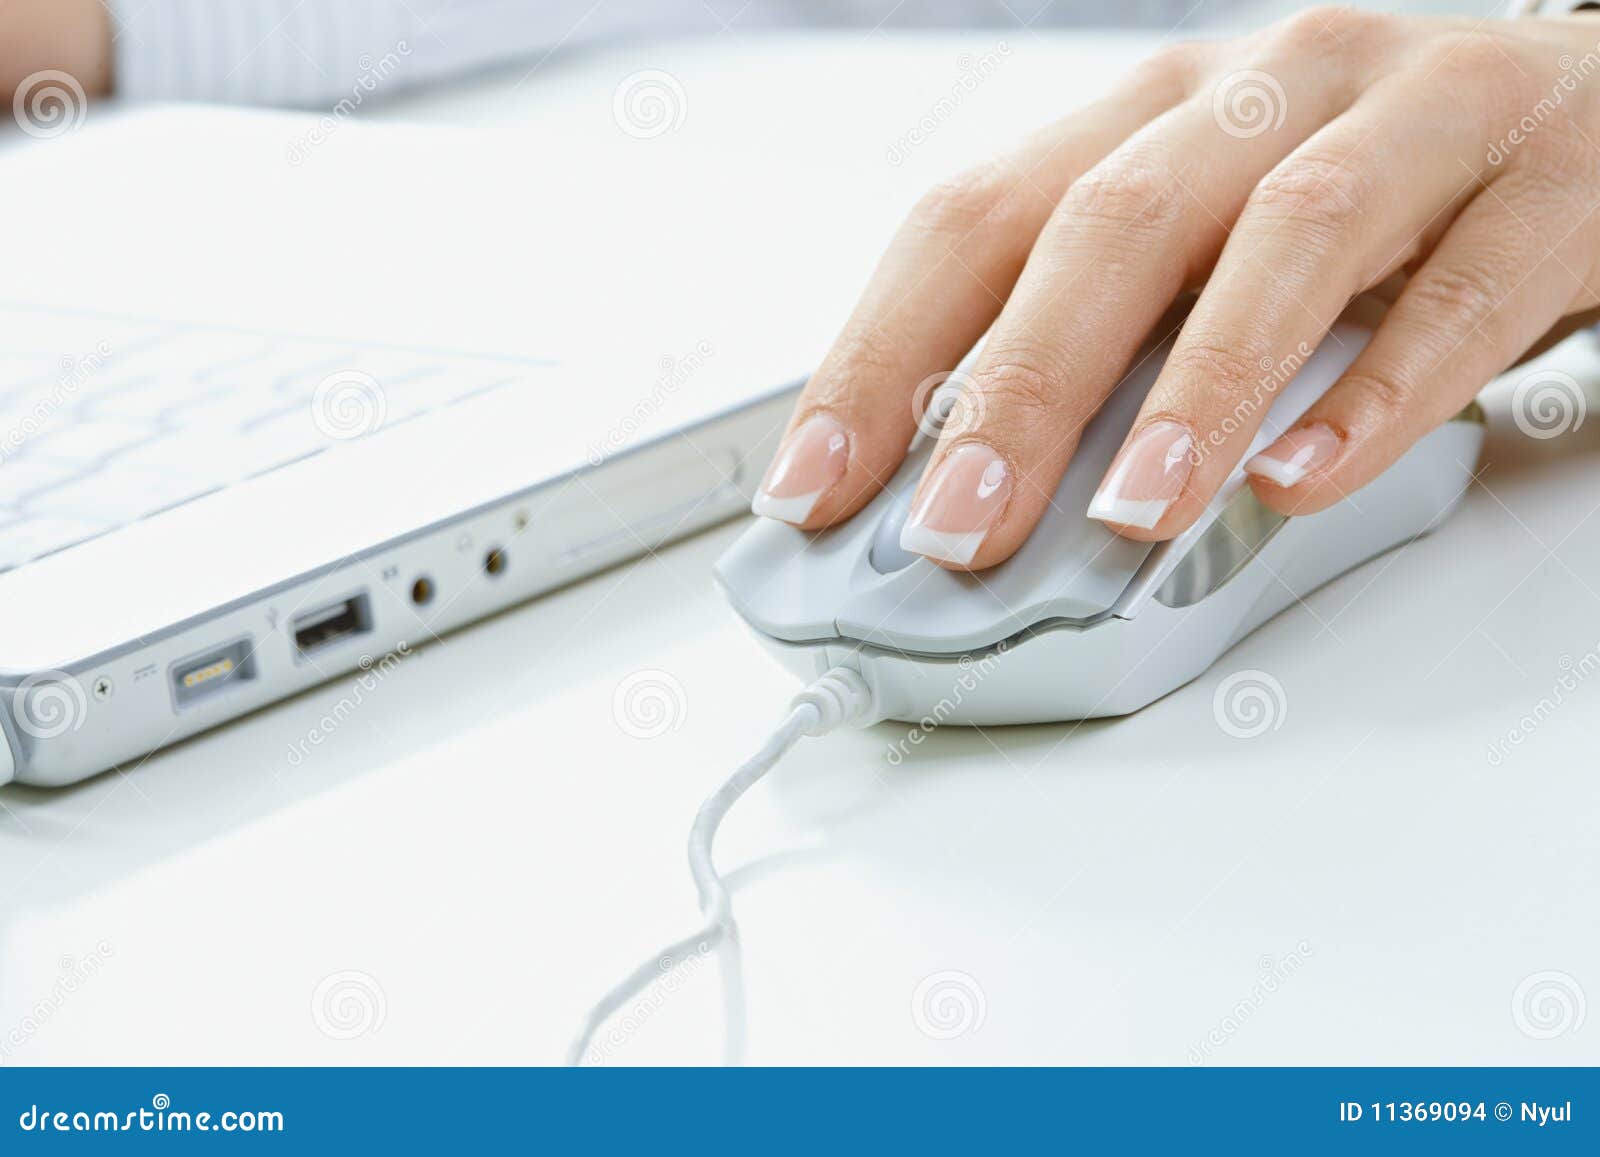 Vingers op computermuis. Close-up van vrouwelijke vingers en spijkers op computermuis.